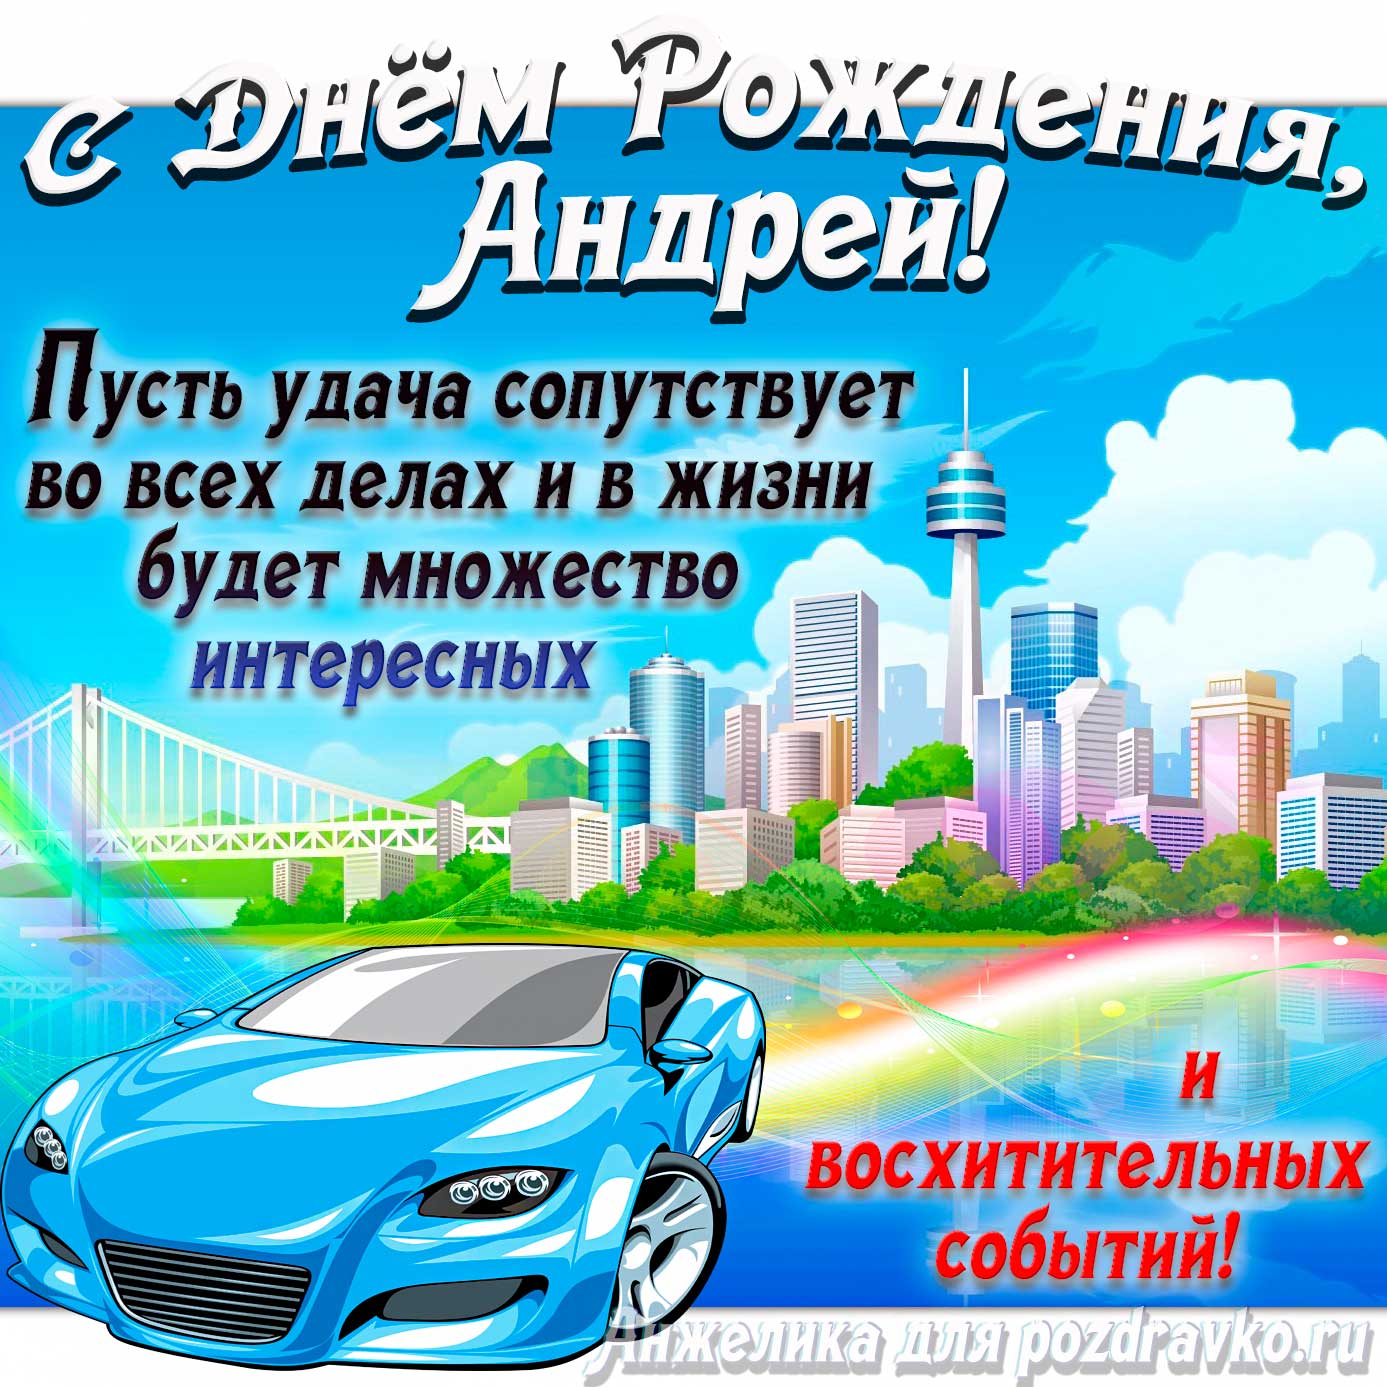 Картинка с Днём Рождения Андрей с голубой машиной и пожеланием — скачать бесплатно